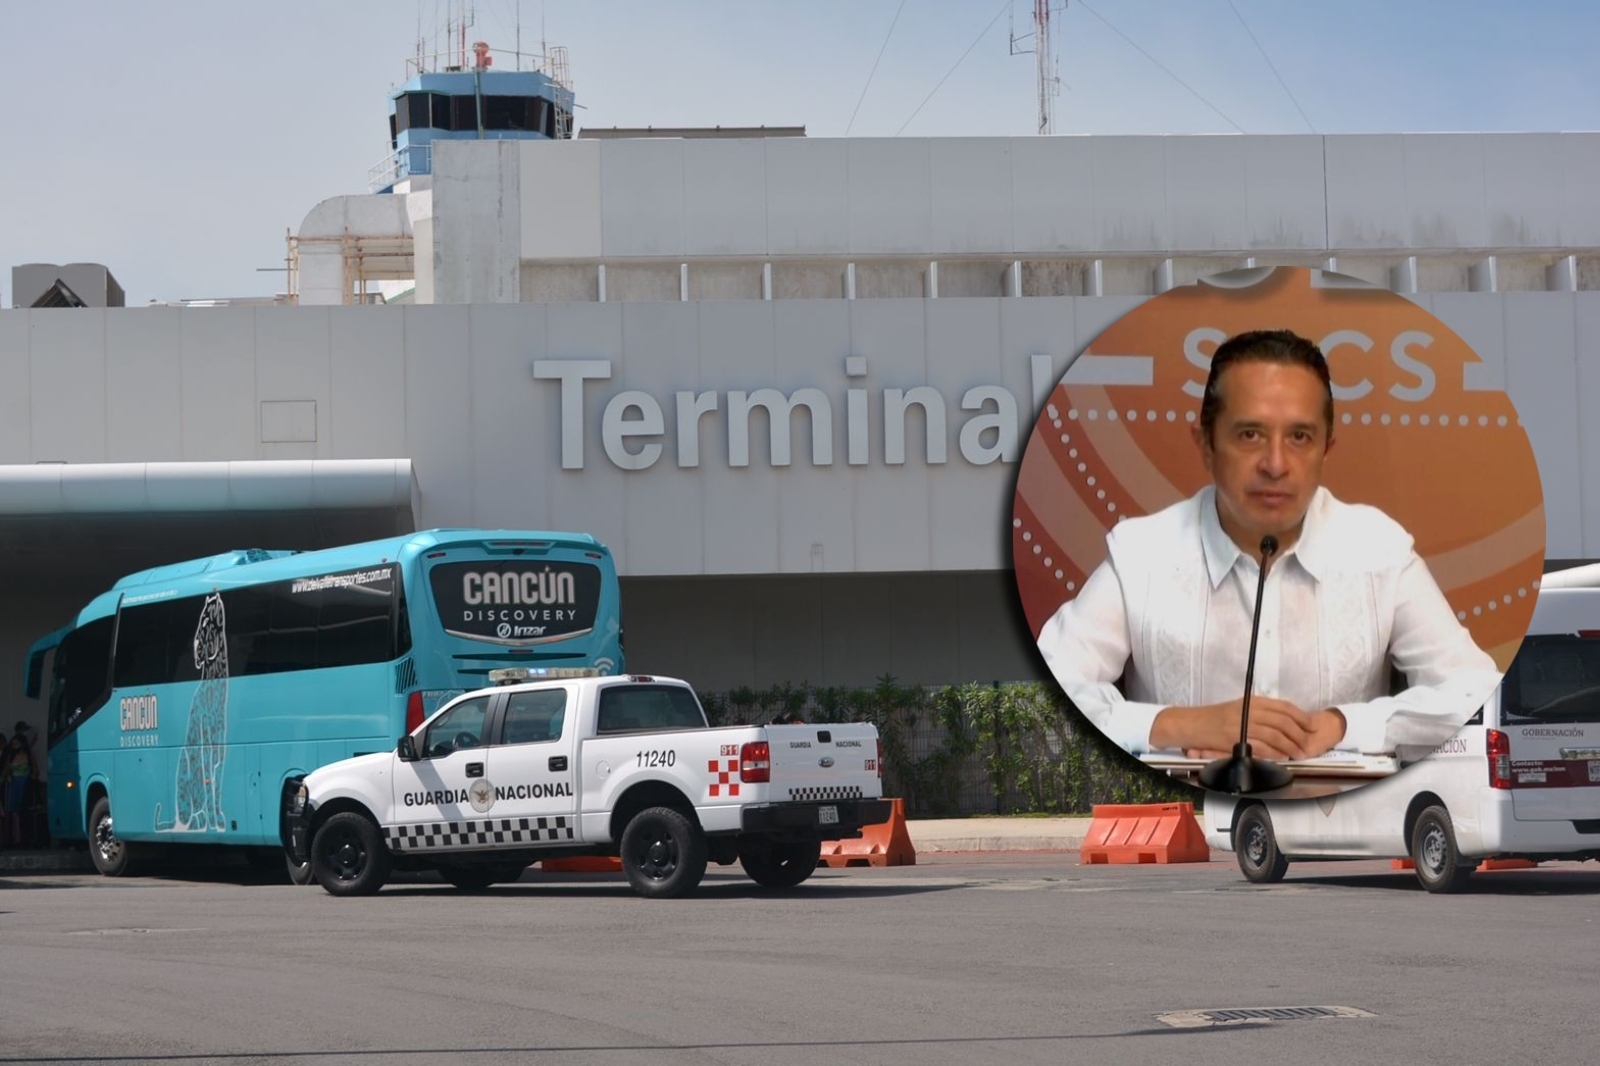 El Gobernador de Quintana Roo no ha corregido el error cometido en sus redes sociales, en la publicación sobre el aeropuerto de Cancún